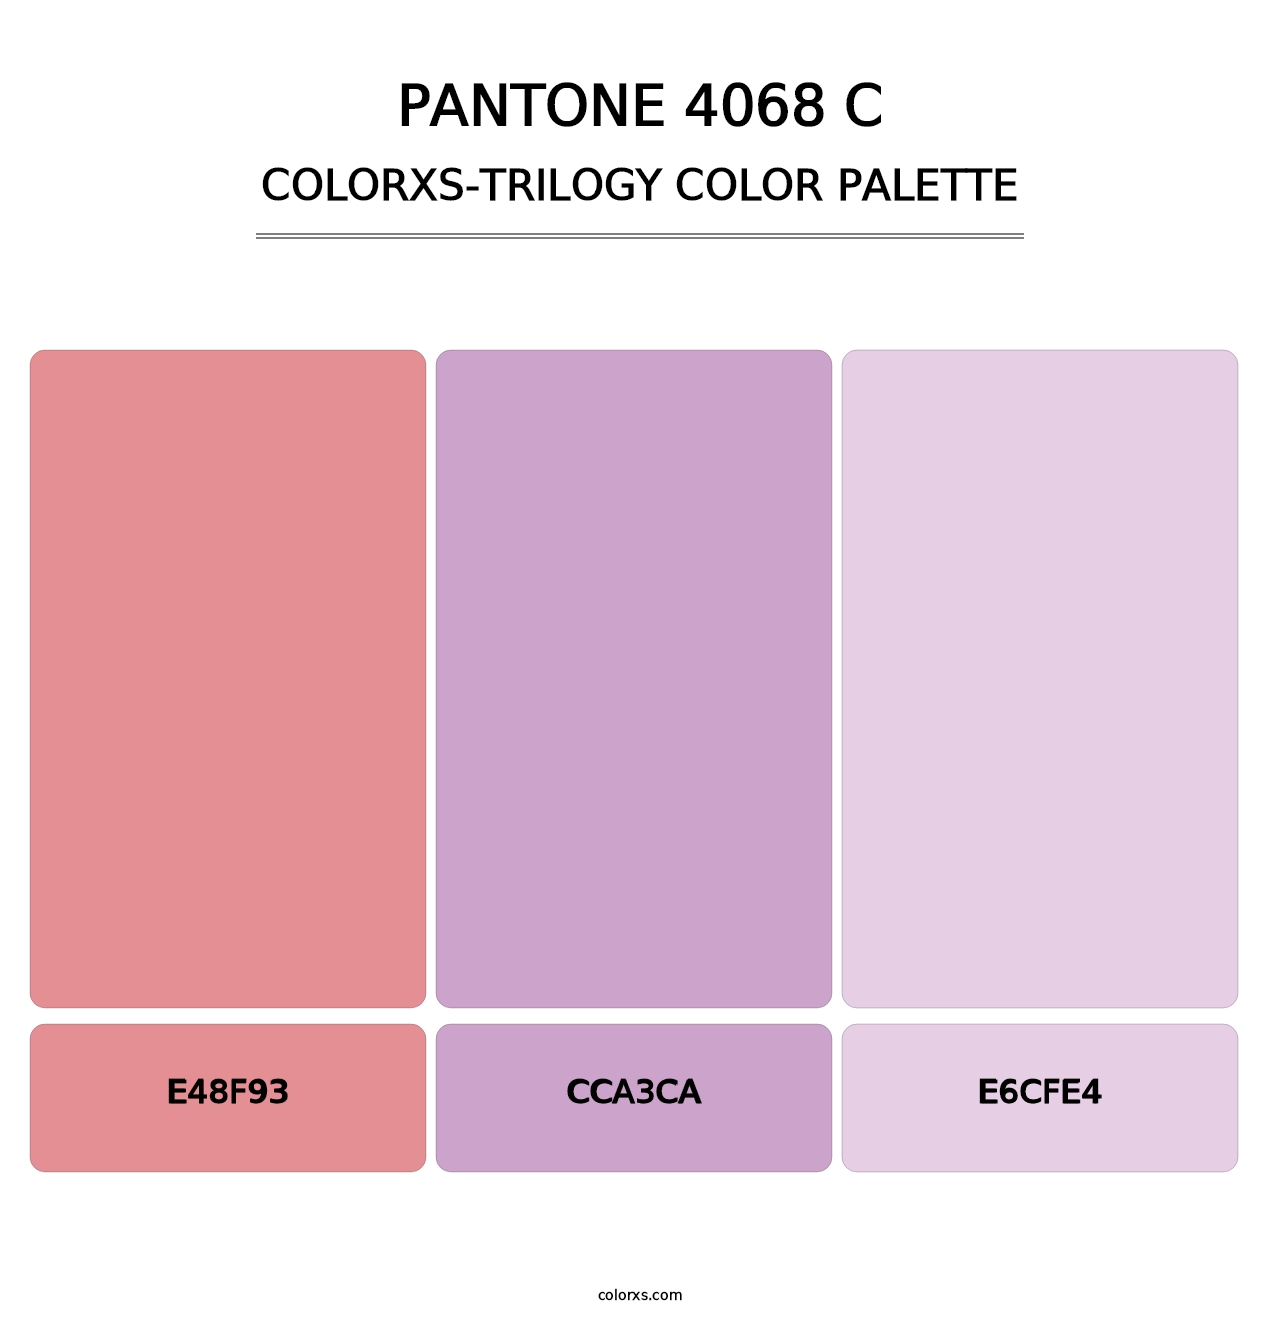 PANTONE 4068 C - Colorxs Trilogy Palette